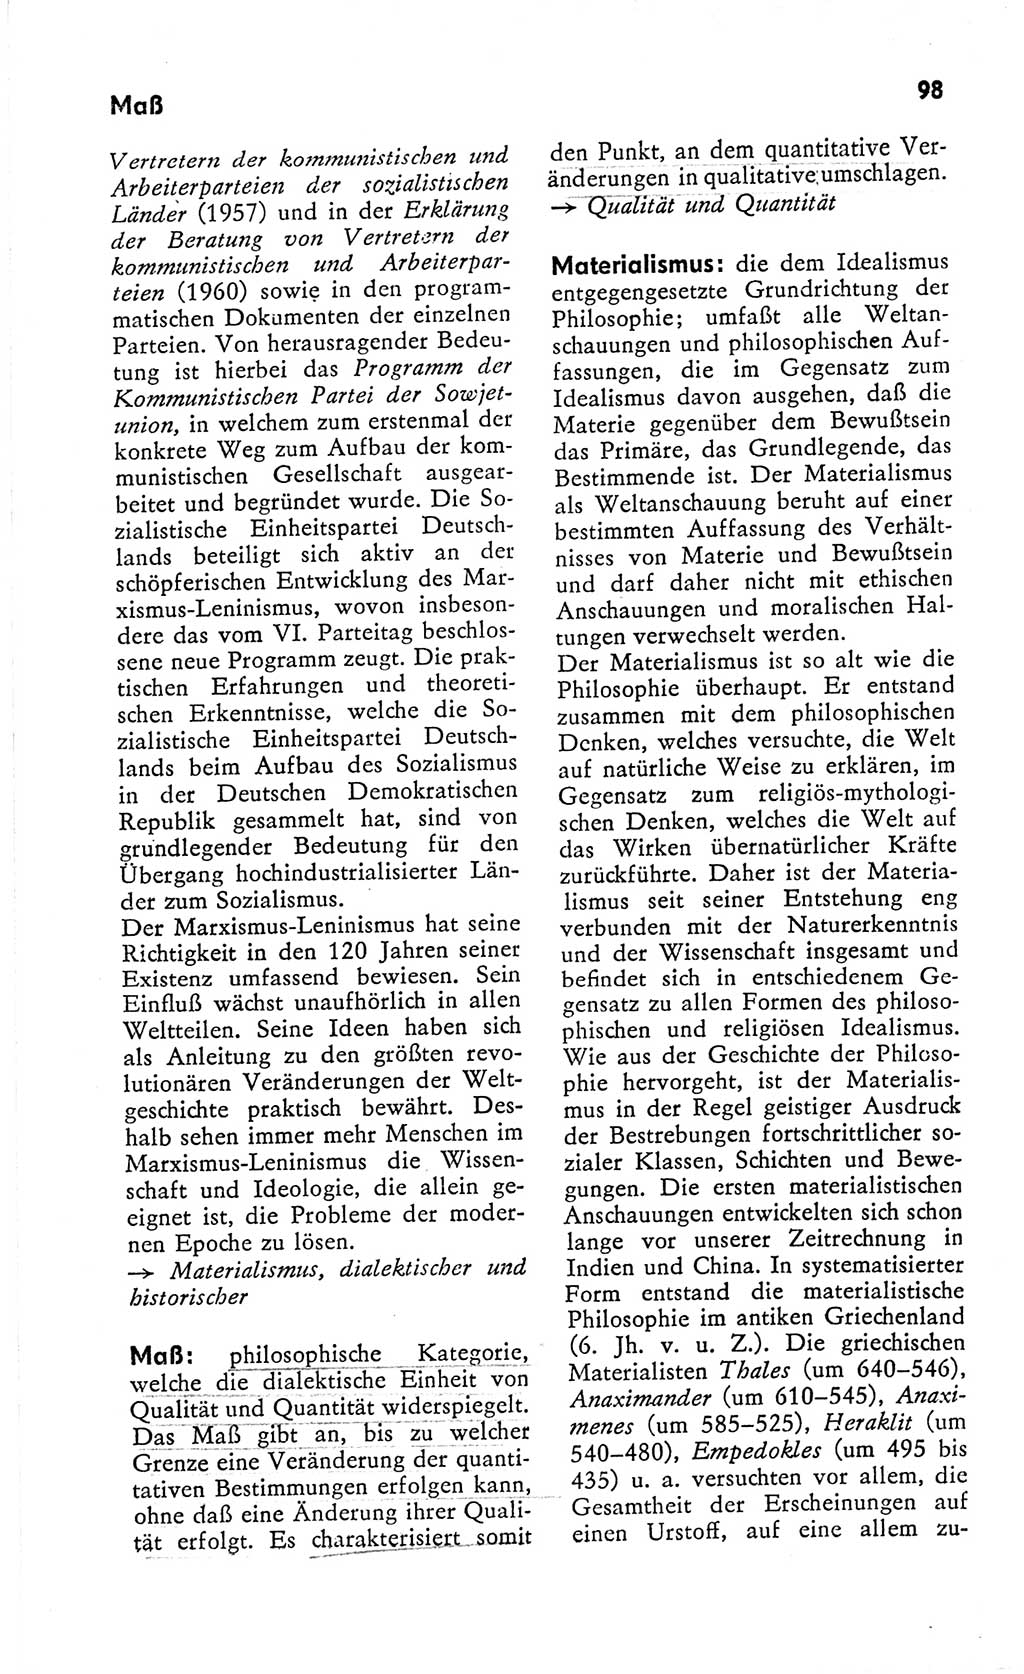 Kleines Wörterbuch der marxistisch-leninistischen Philosophie [Deutsche Demokratische Republik (DDR)] 1966, Seite 98 (Kl. Wb. ML Phil. DDR 1966, S. 98)